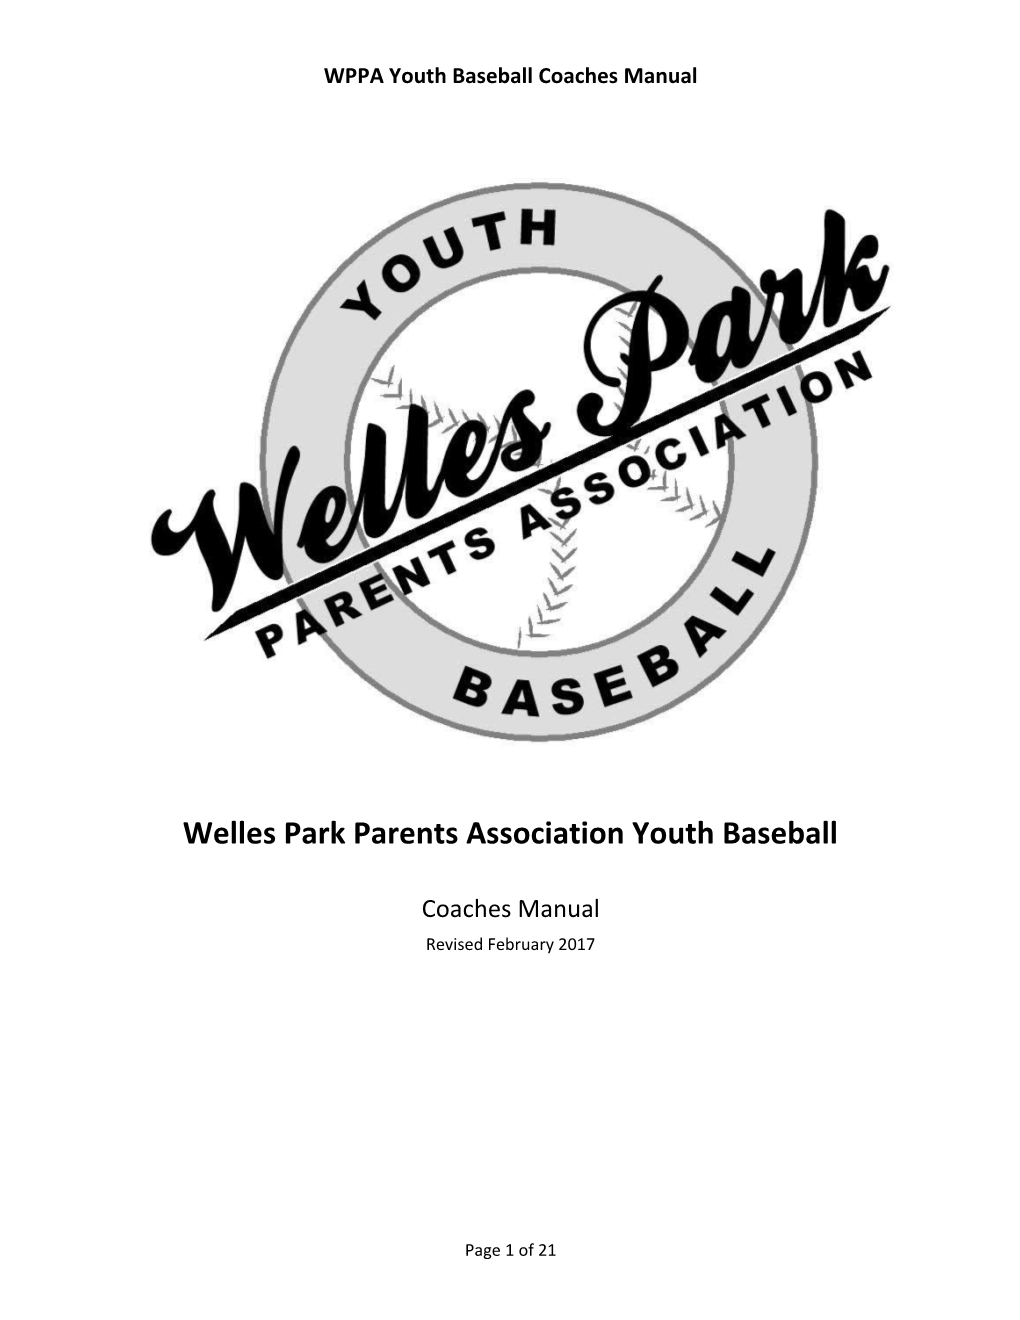 Welles Park Parents Association